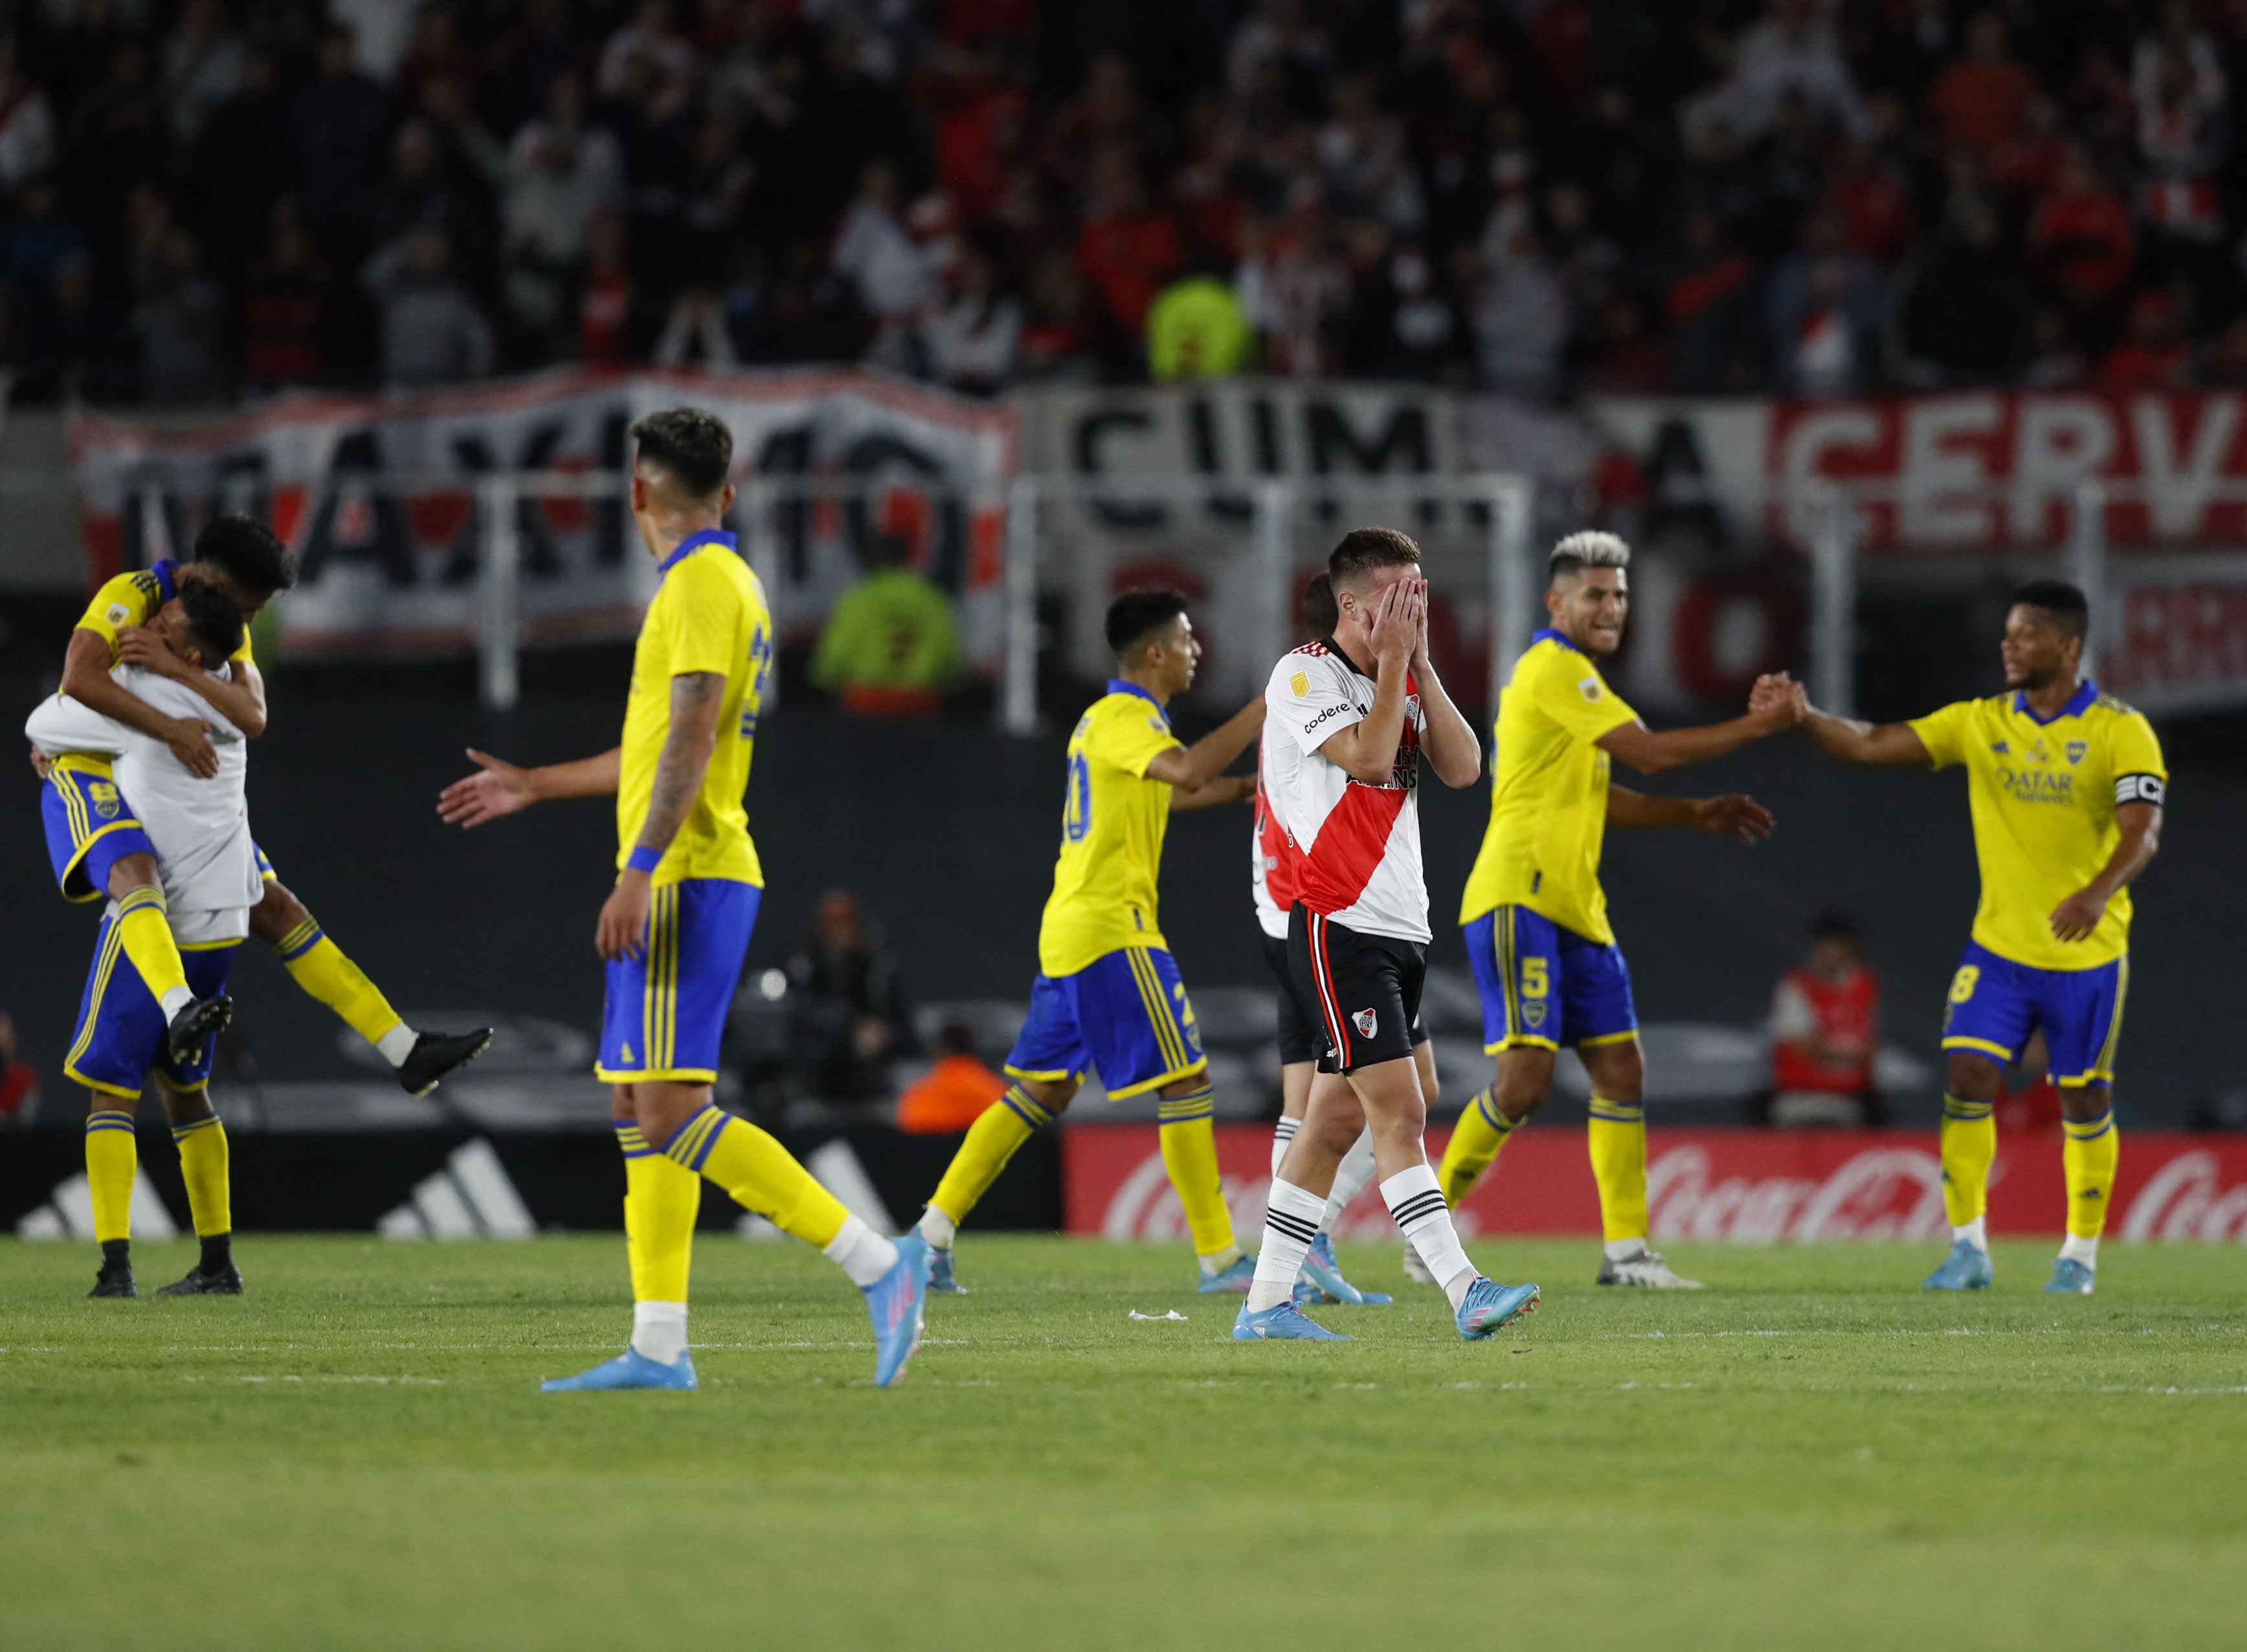 Contraste típico del fútbol: la felicidad de Boca y el dolor de unode los futbolistas de River tras el tropiezo (REUTERS/Agustin Marcarian)